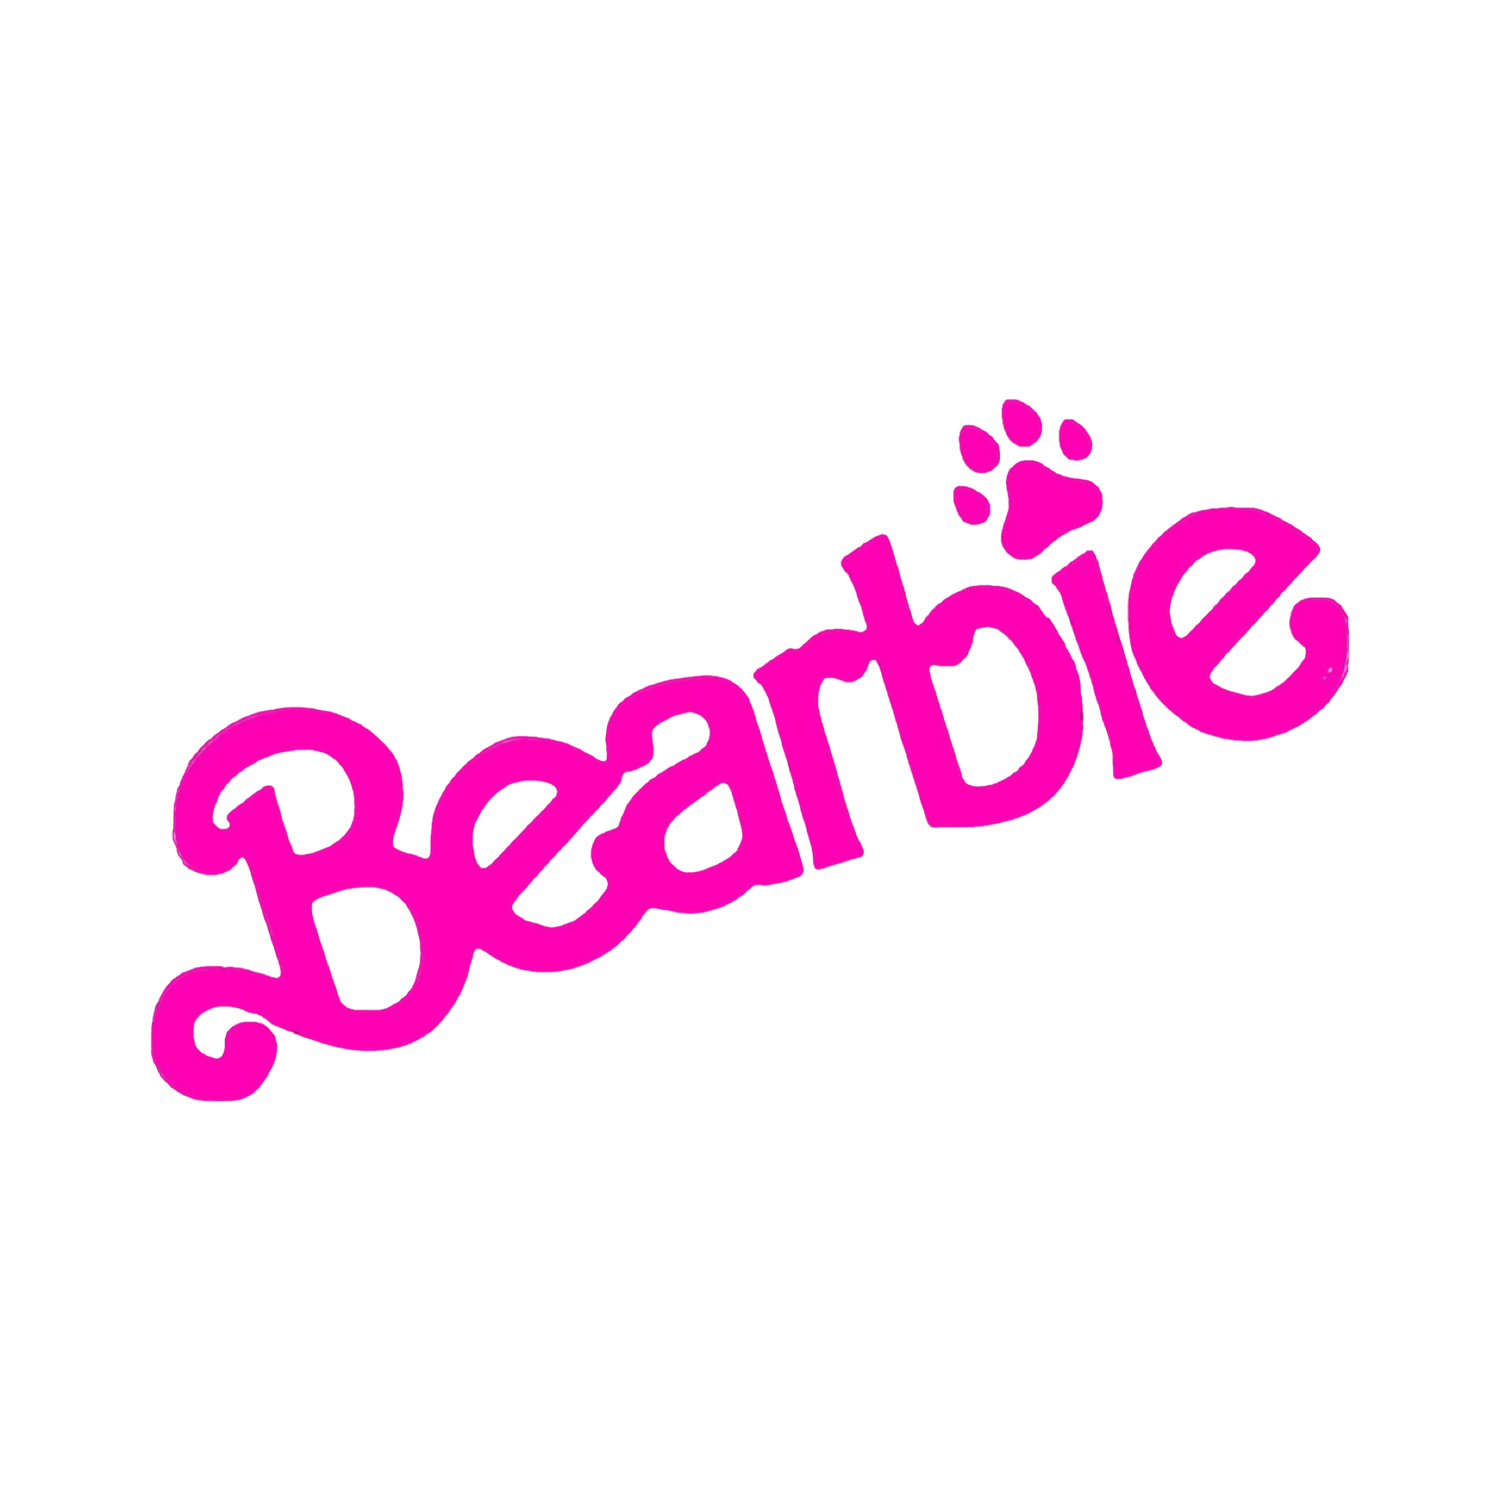 Bearbie